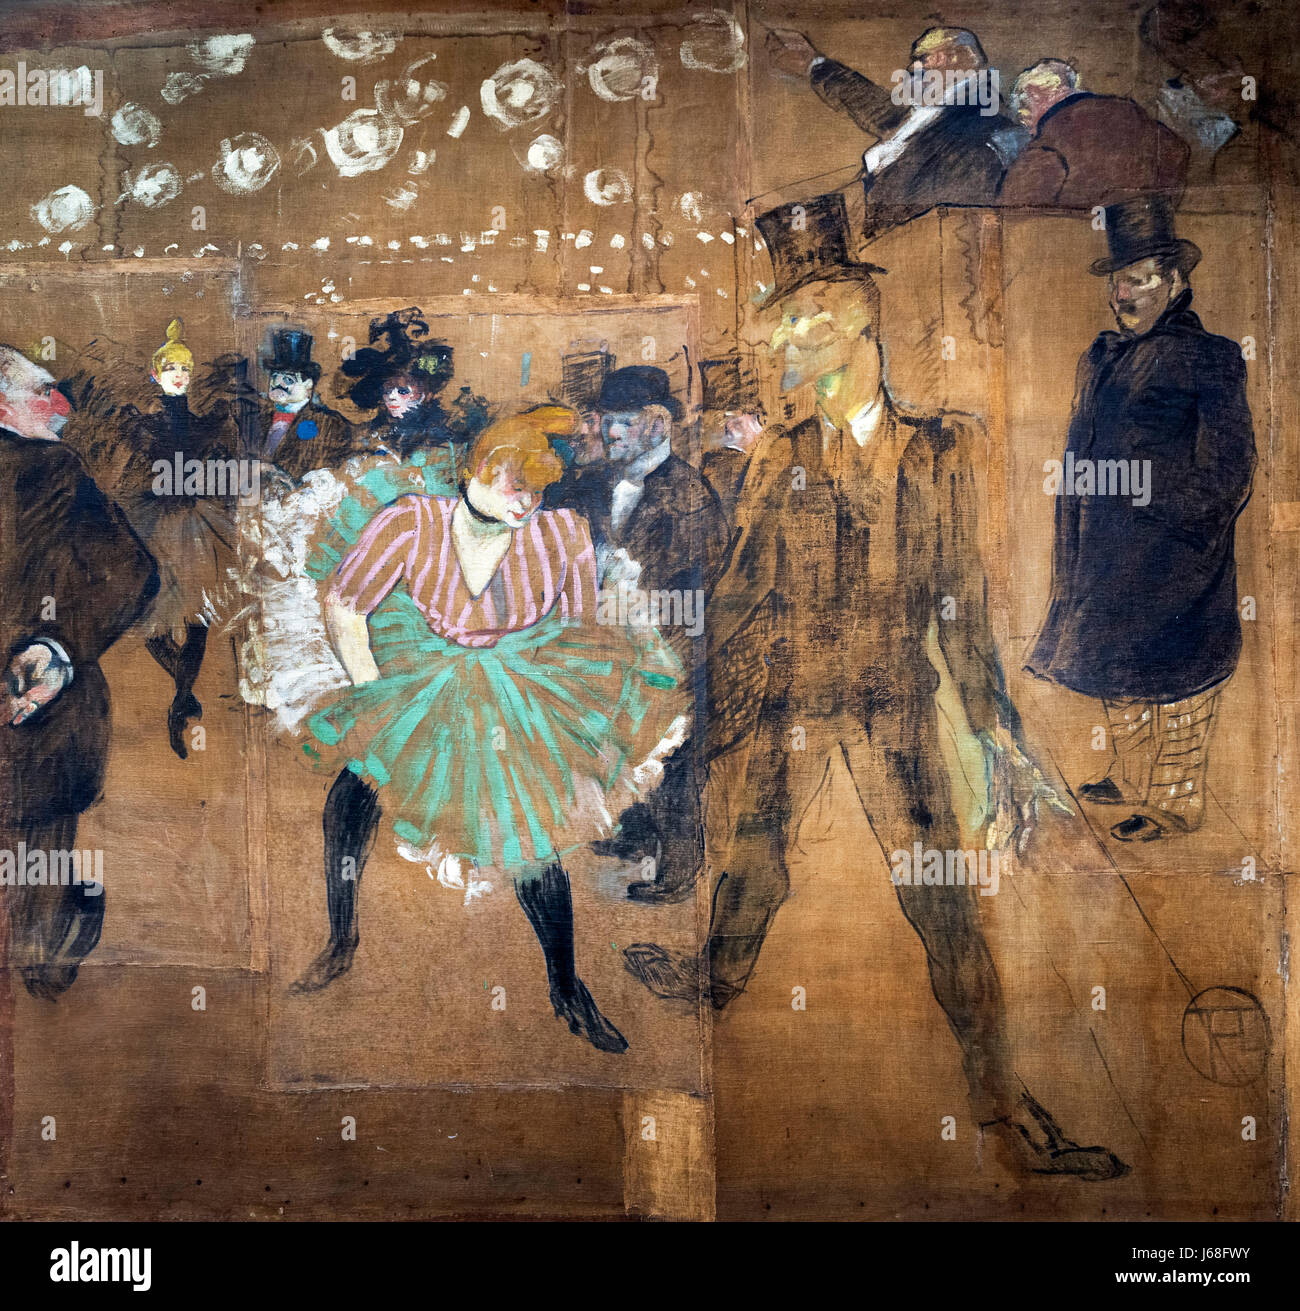 Pintura de Toulouse-Lautrec. "La Danse au Moulin Rouge' (baile en el Moulin Rouge) por Henri de Toulouse-Lautrec (1864-1901), óleo sobre lienzo, 1895. La pintura es también conocida como 'La Goulue et Valentin le Désossé" Foto de stock